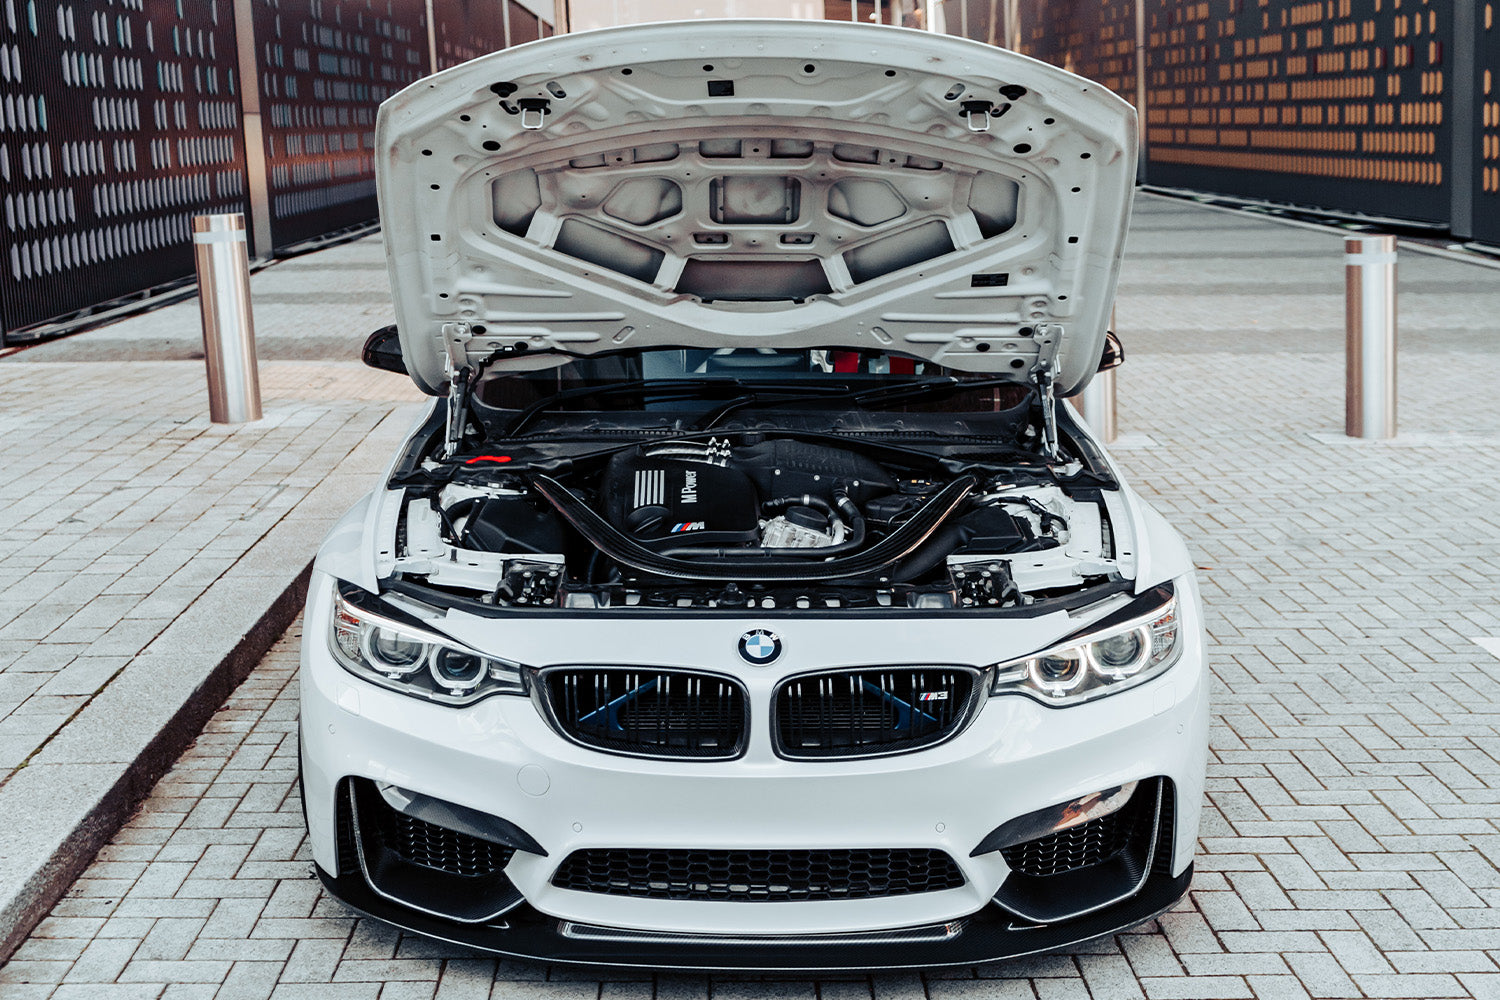 BMW S55 Engine Reliability